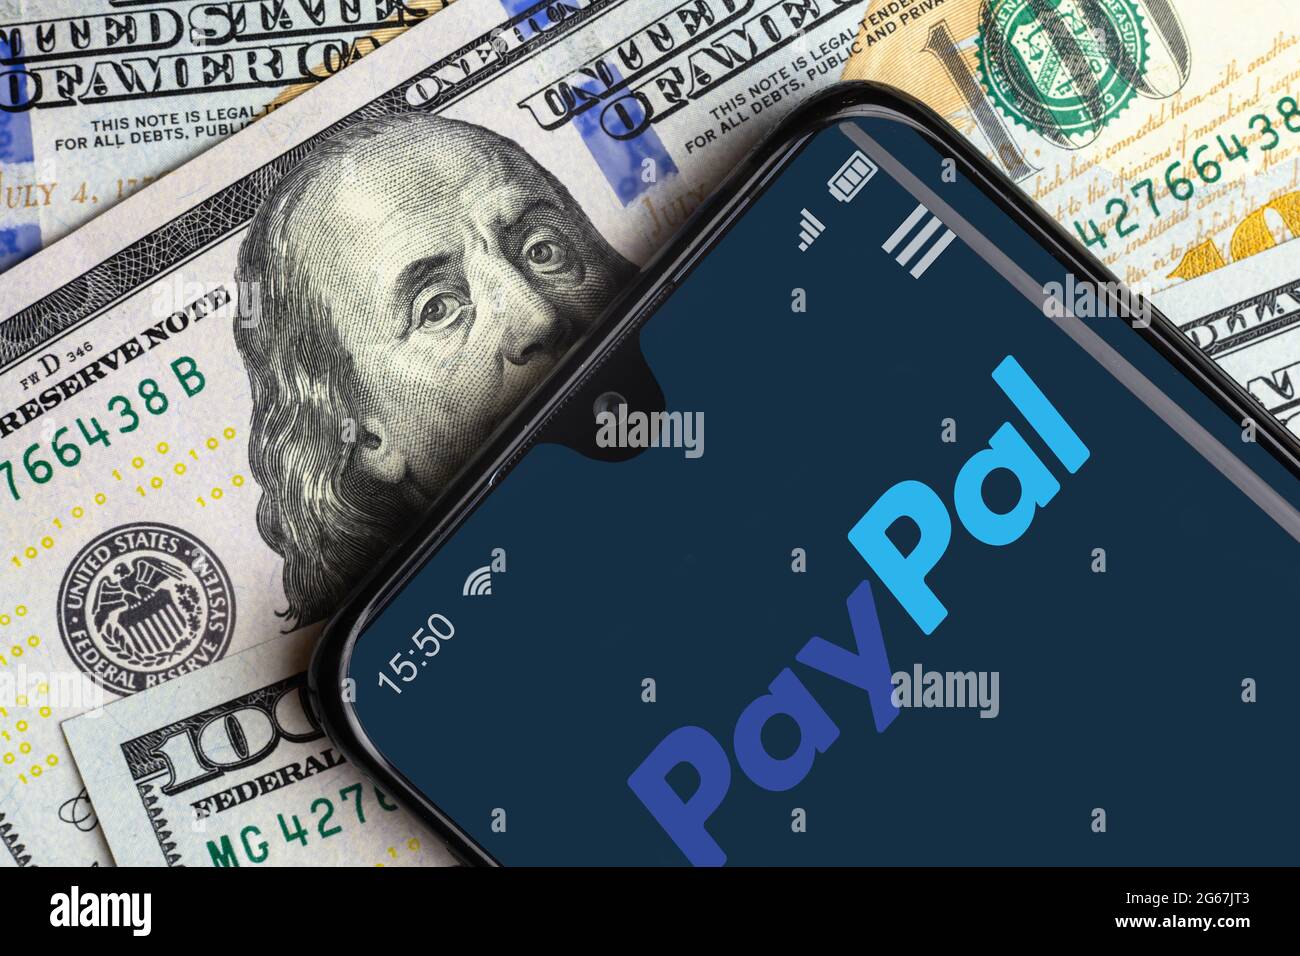 Moscou - 10 juin 2021 : logo PayPal sur l'écran du smartphone et factures en dollars, application numérique pour le paiement sur téléphone mobile. Concept d'argent virtuel, paypal s. Banque D'Images